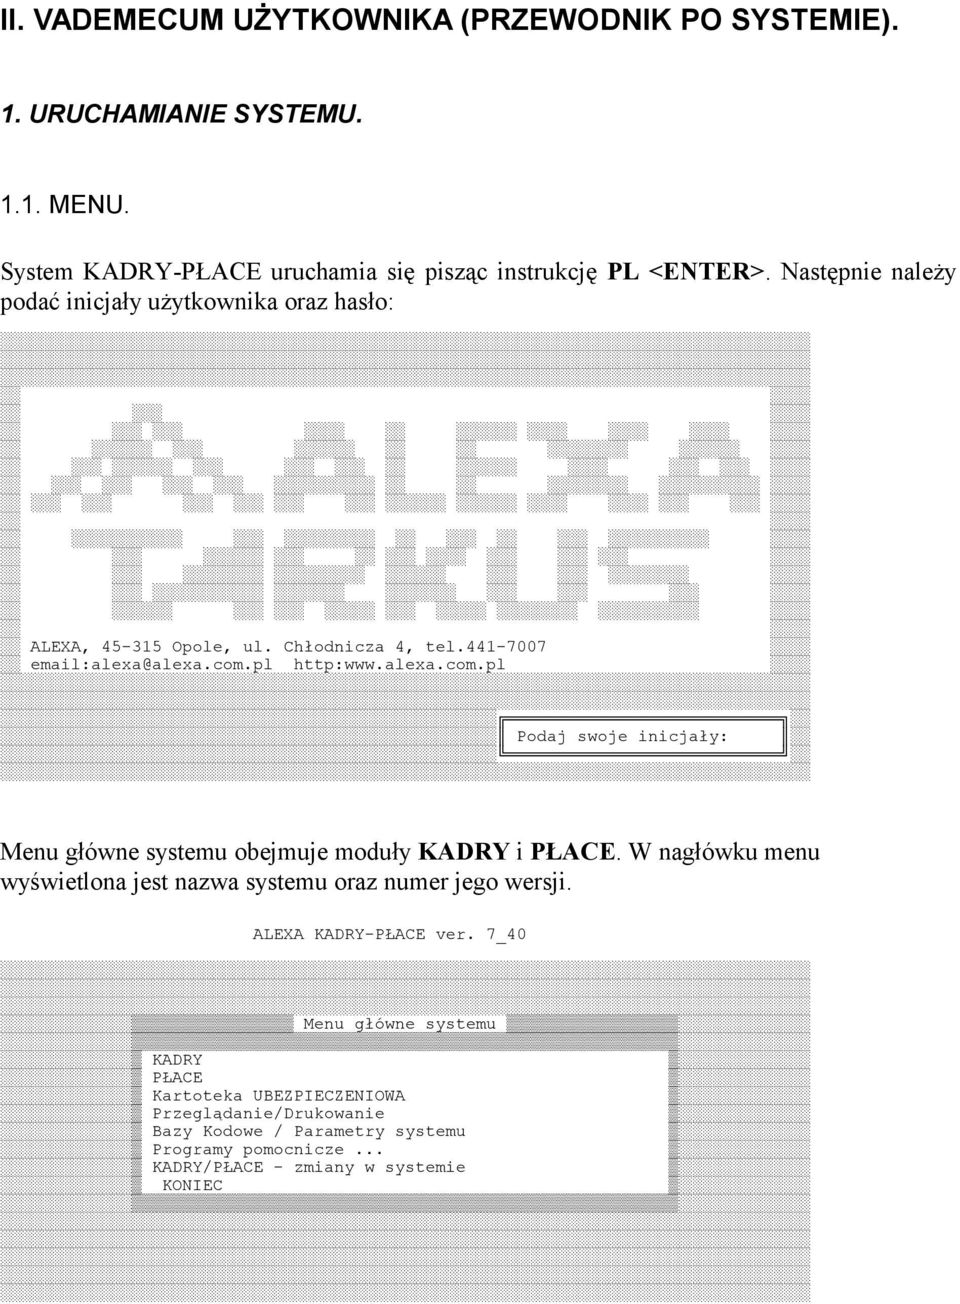 pl http:www.alexa.com.pl Podaj swoje inicjały: Menu główne systemu obejmuje moduły KADRY i PŁACE.